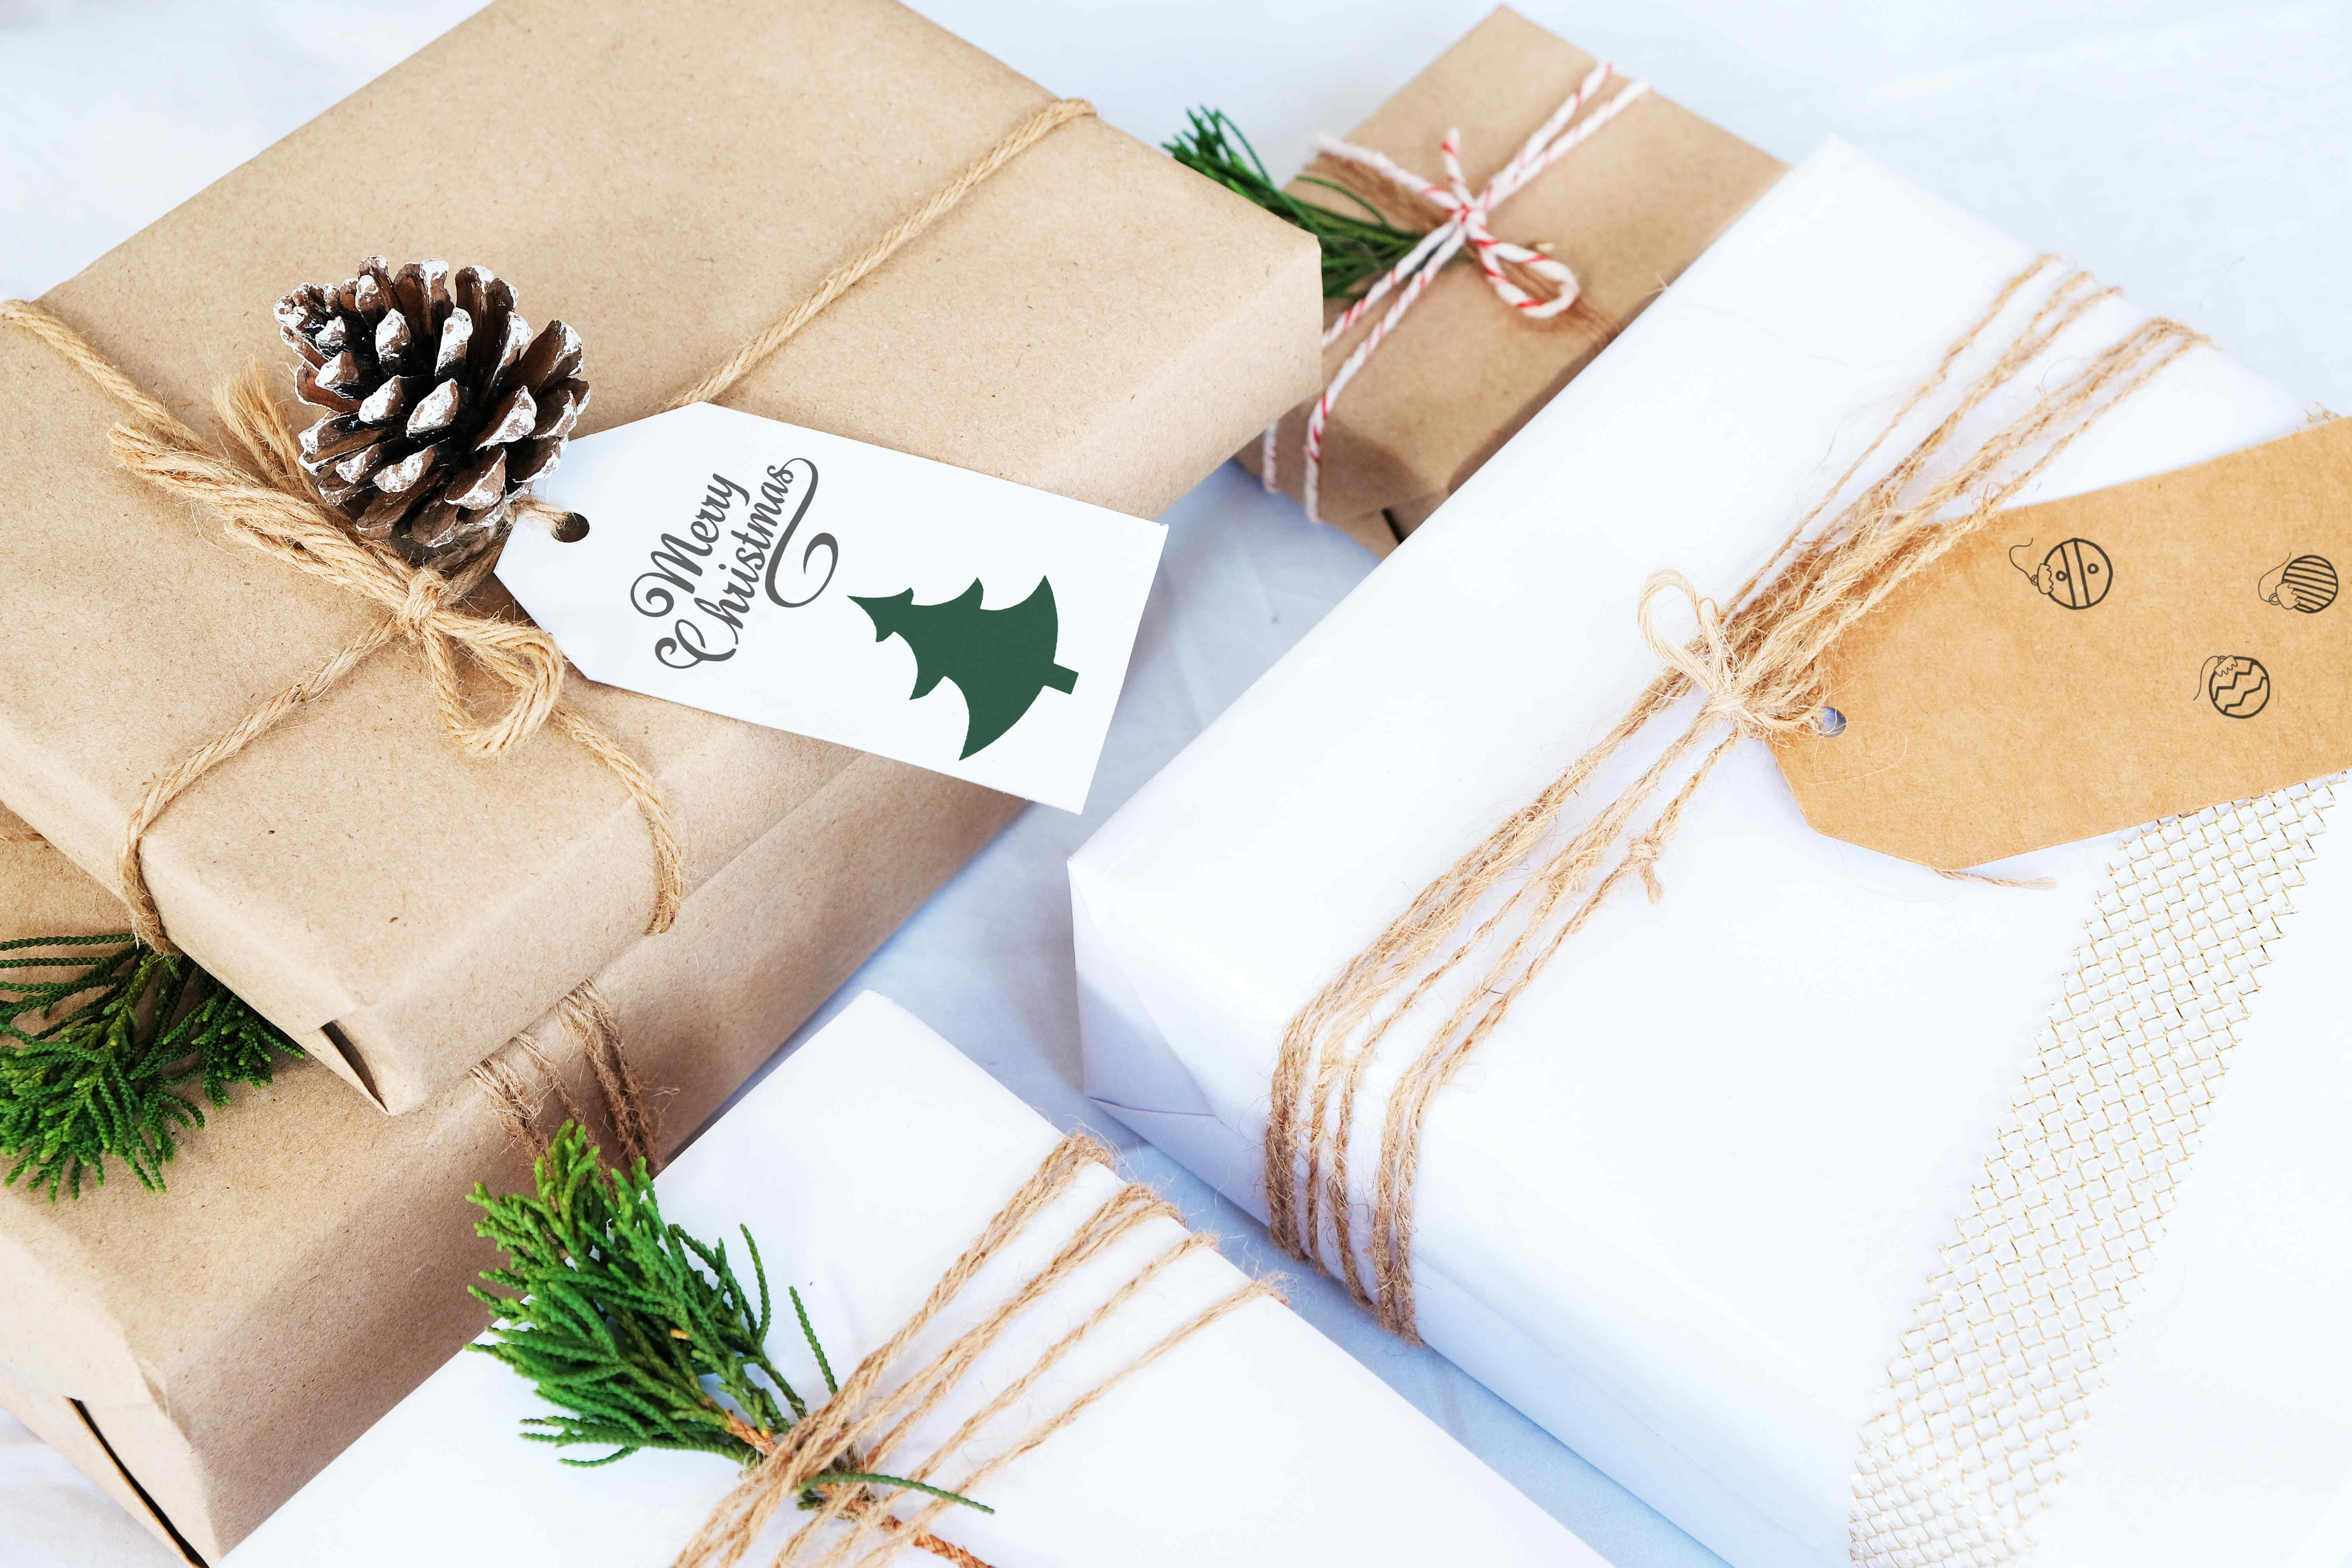 Etiquette cadeau avec paquets emballés